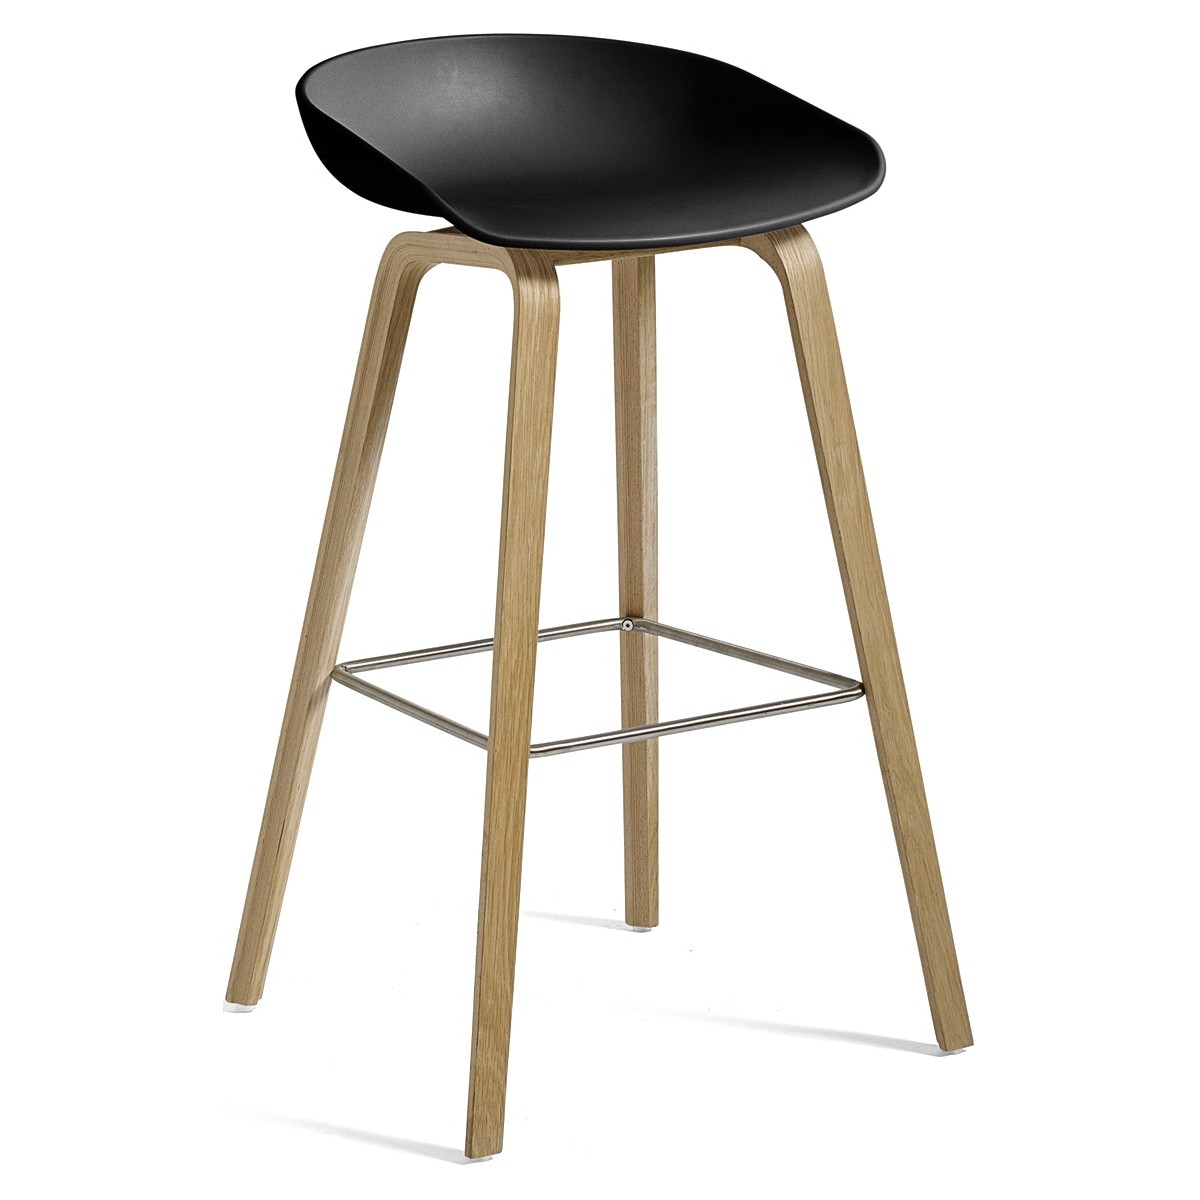 AAS32 Bar stool Black shell + Oak base